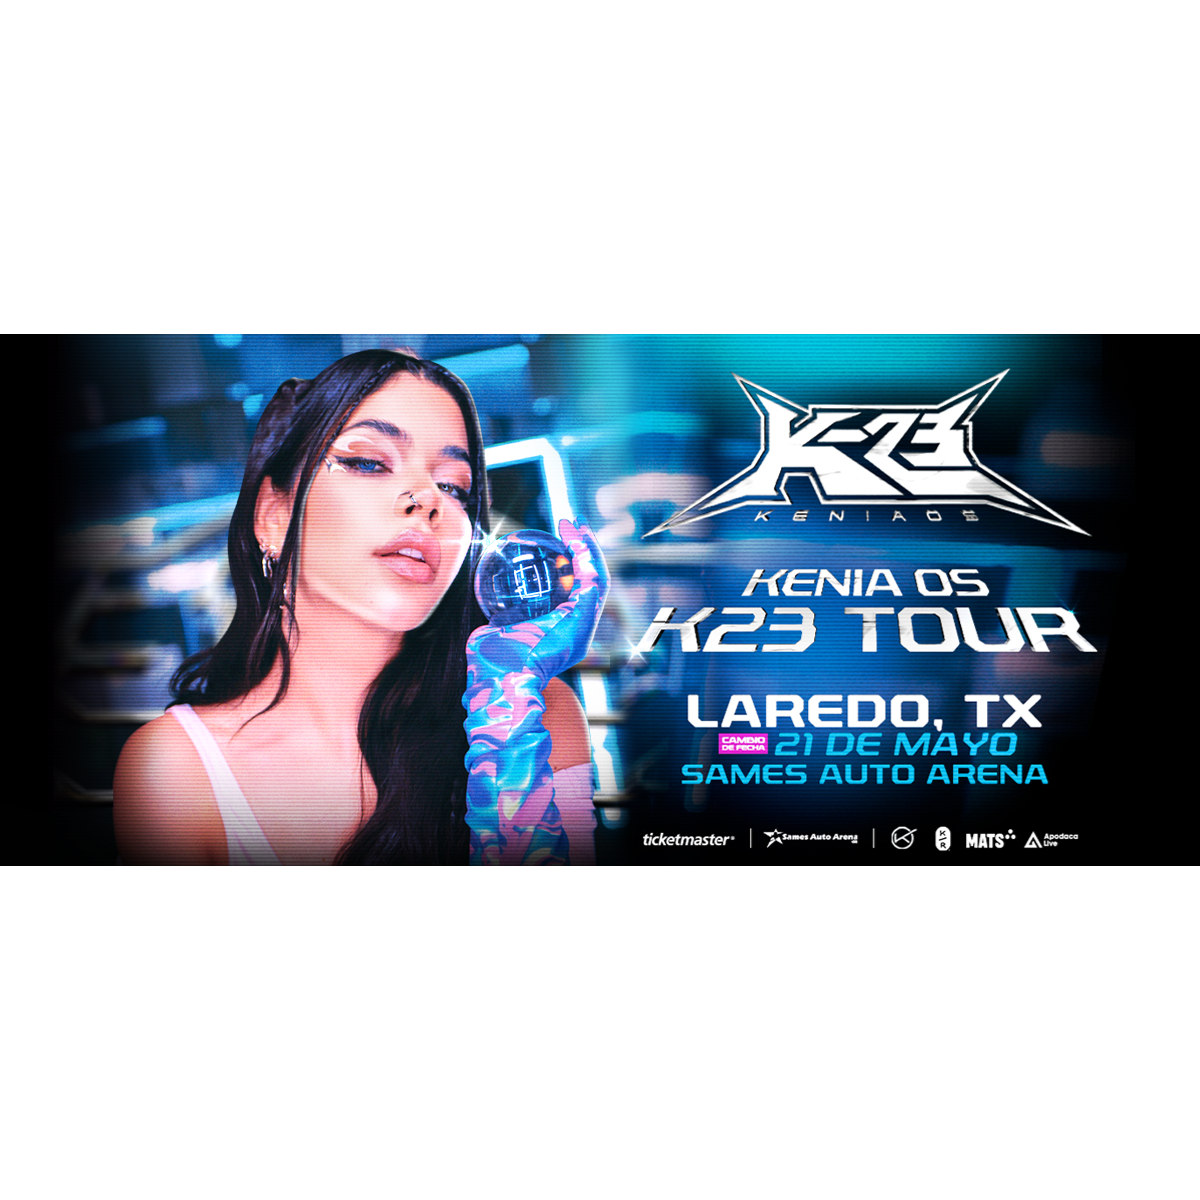 k23 tour logo